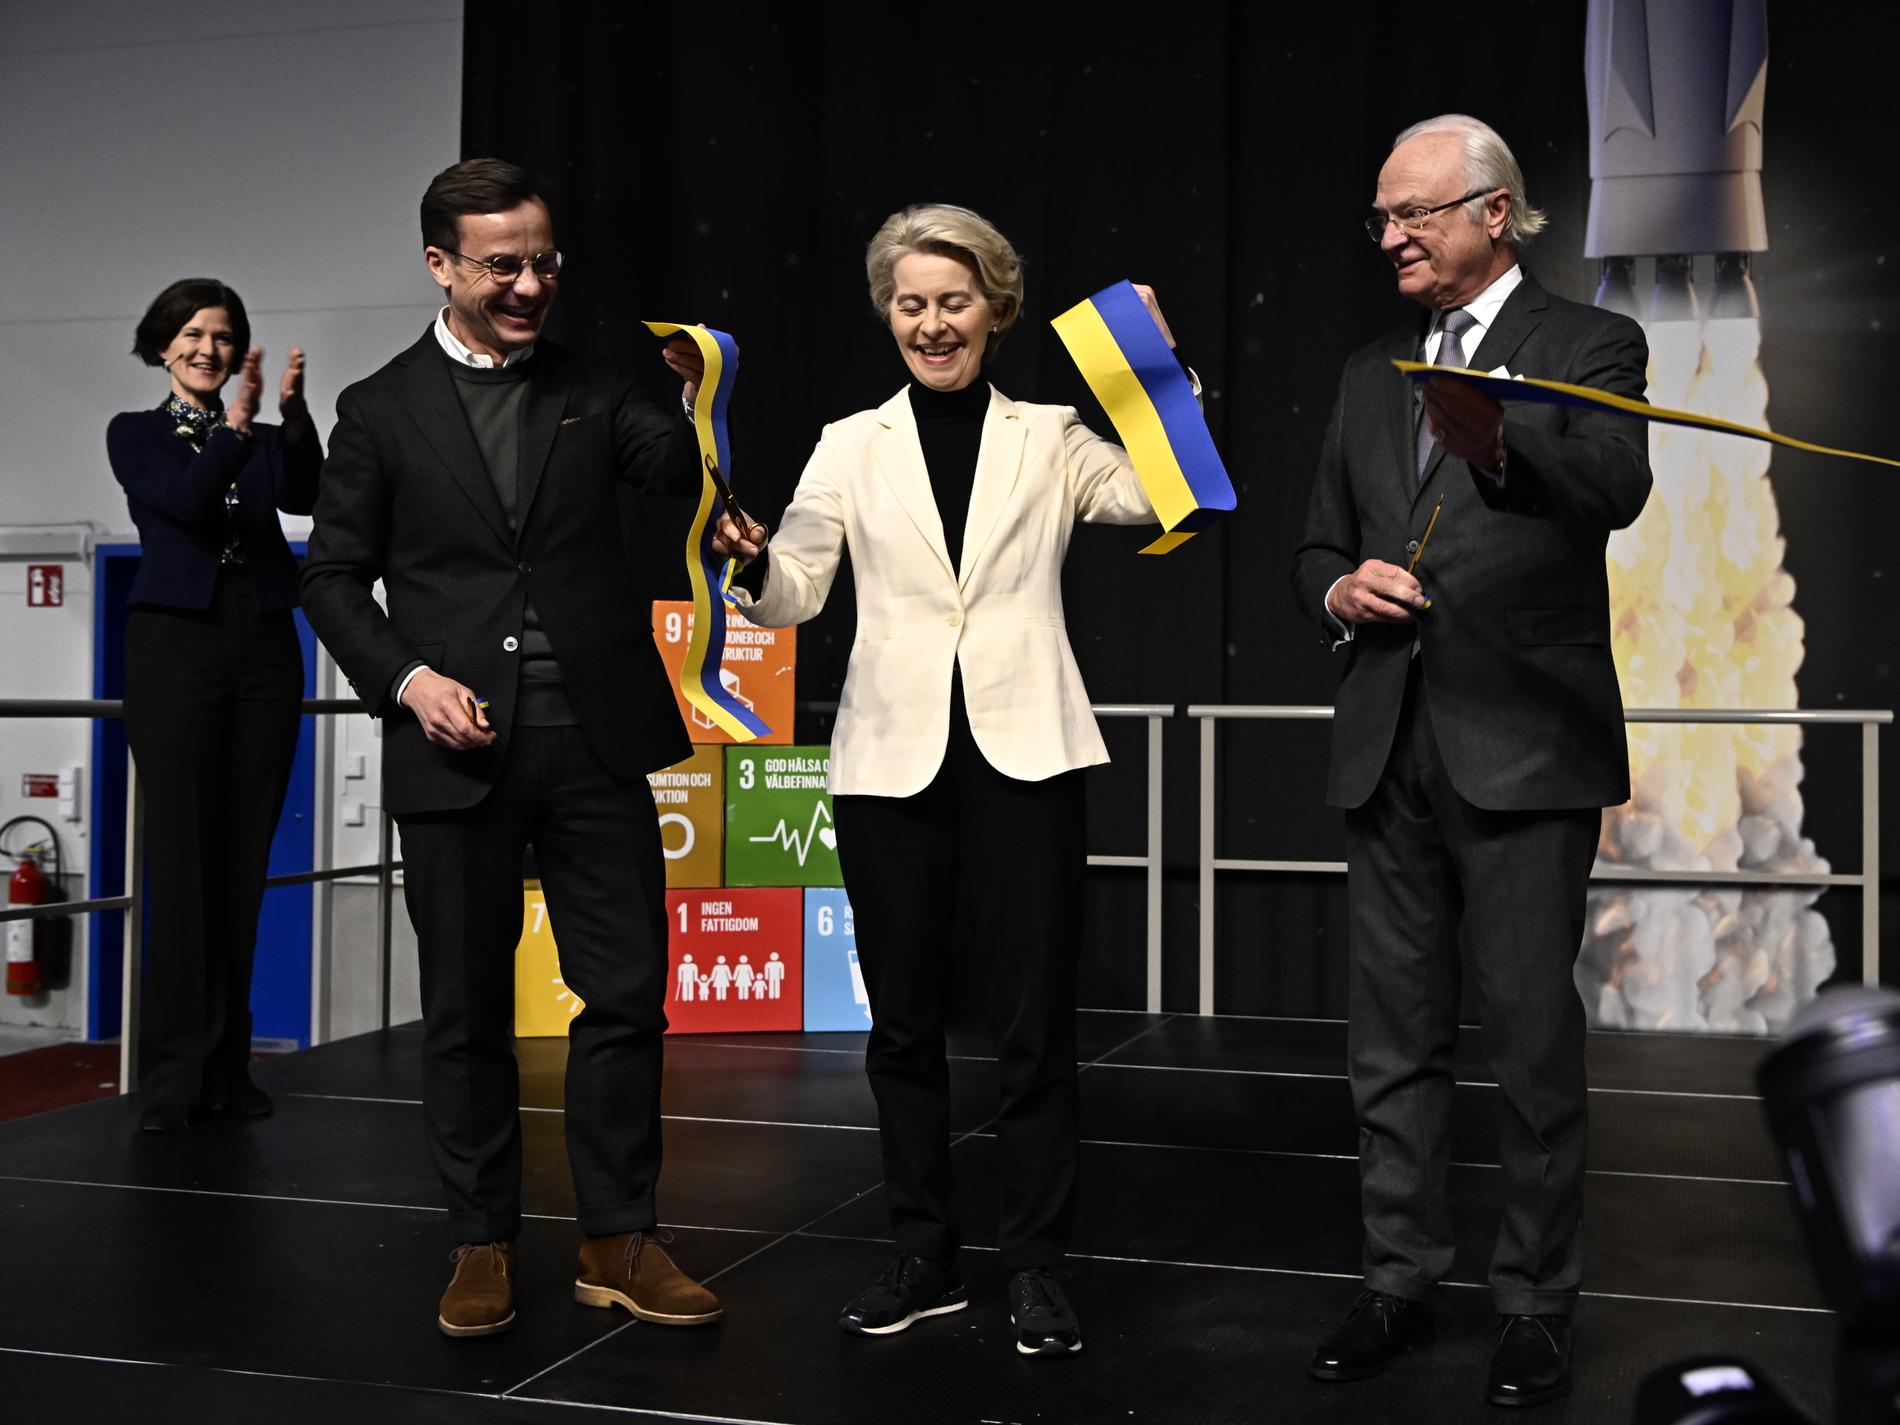 EU-kommissionens ordförande Ursula von der Leyen, statsminister Ulf Kristersson (M) och Kung Carl Gustaf vid invigningen av Esranges nya ramp för satellituppskjutning, Spaceport Esrange utanför Kiruna.